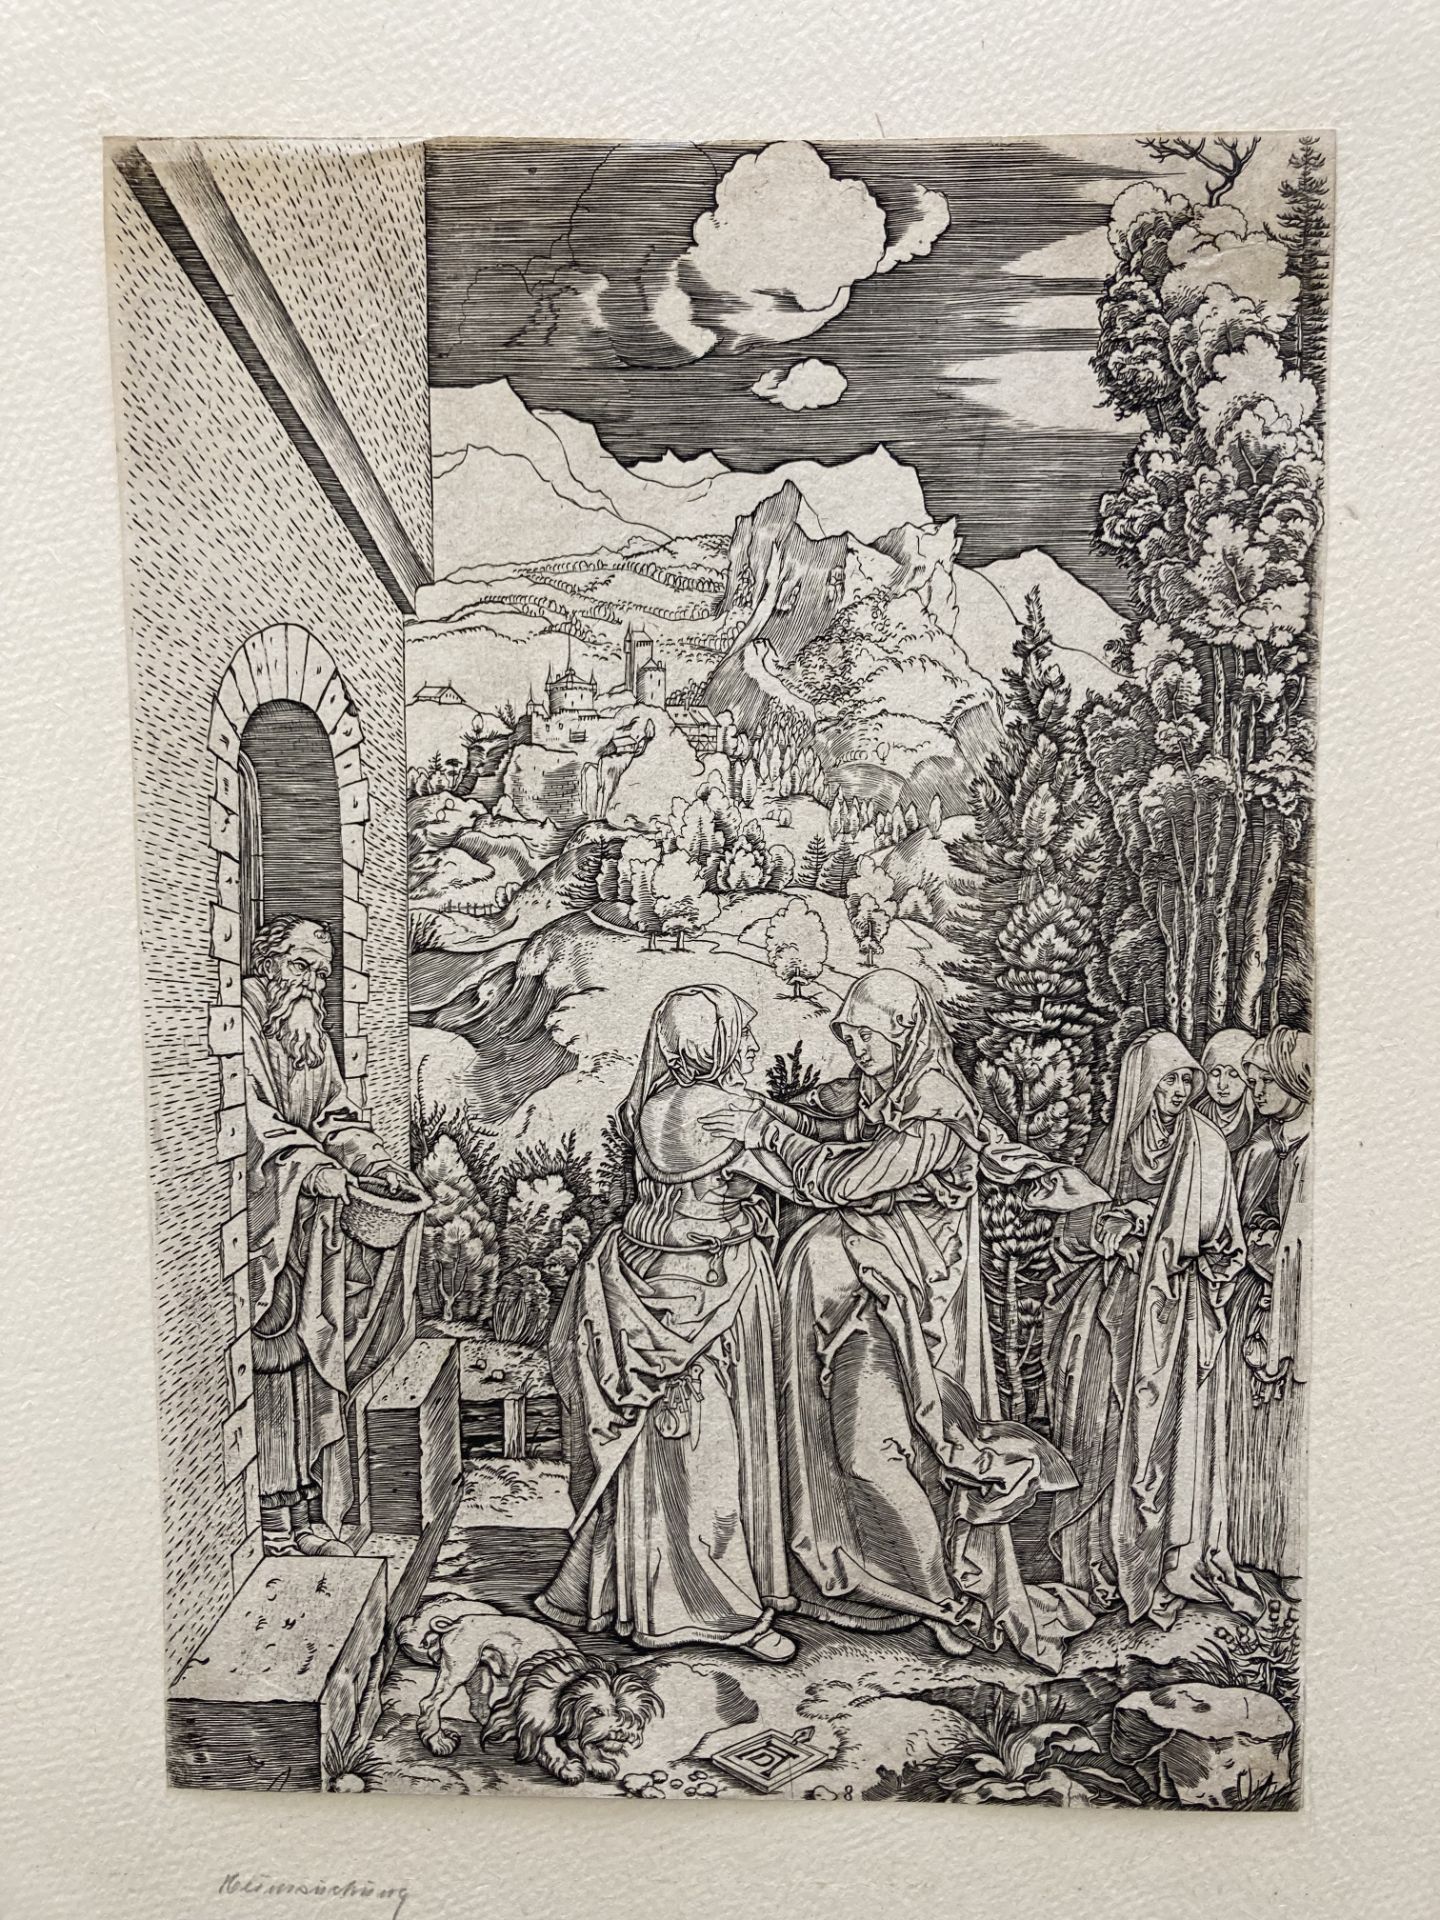 Marcantonio Raimondi ca. 1480 Molinella - 1534 Bologna: Life of the Virgin - Image 11 of 20